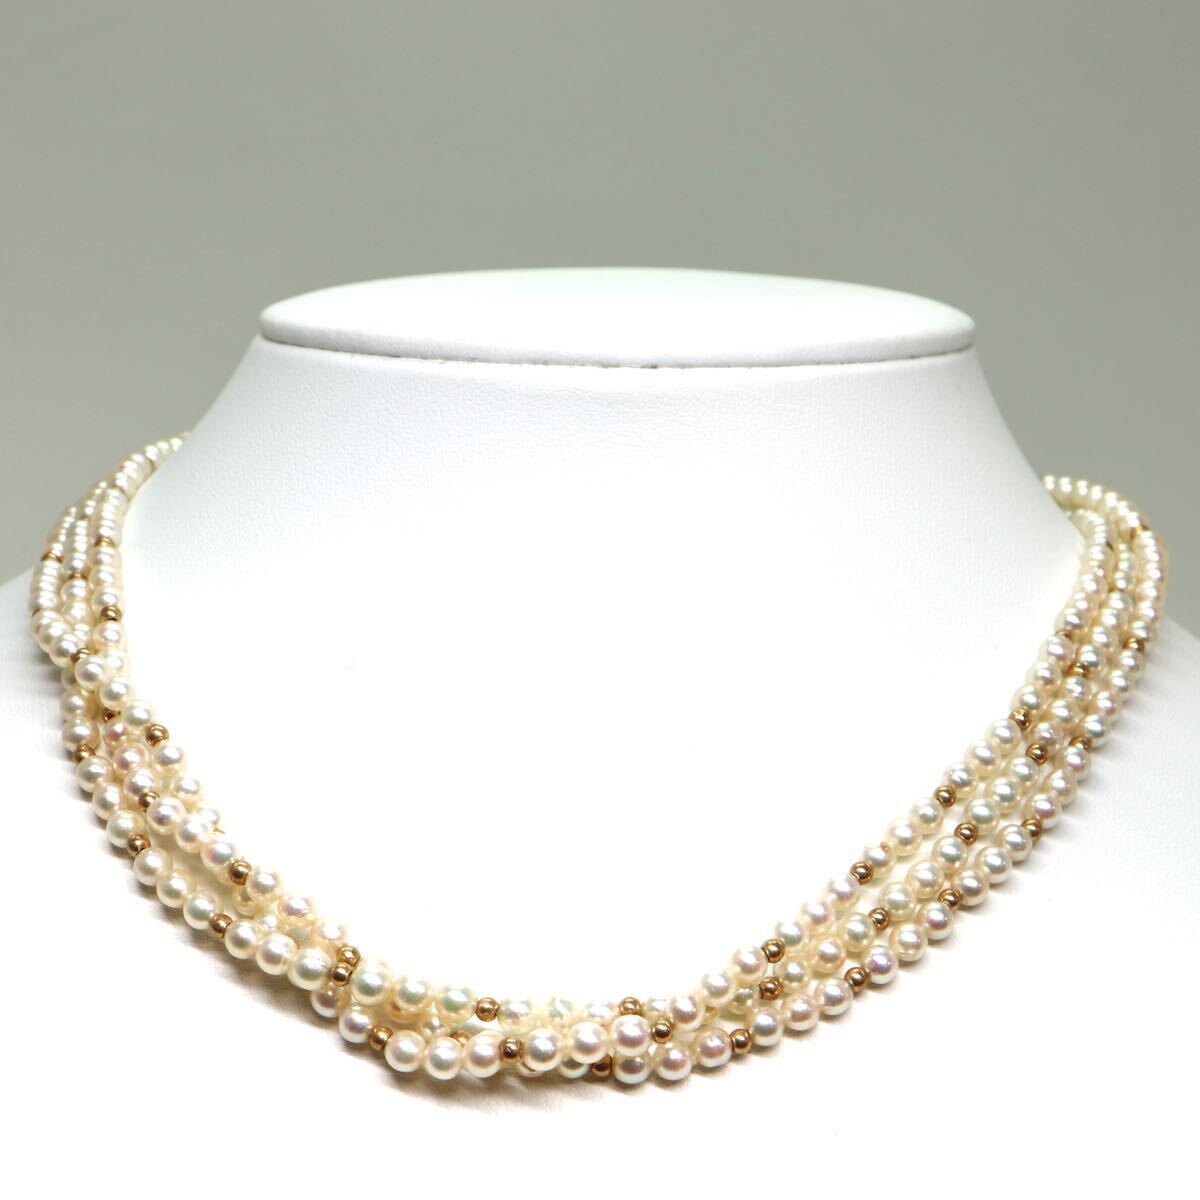 《アコヤ本真珠ネックレス》M 23.4g 約3.5-4.0mm珠 約40.5cm pearl necklace ジュエリー jewelry CC0/CC0_画像2